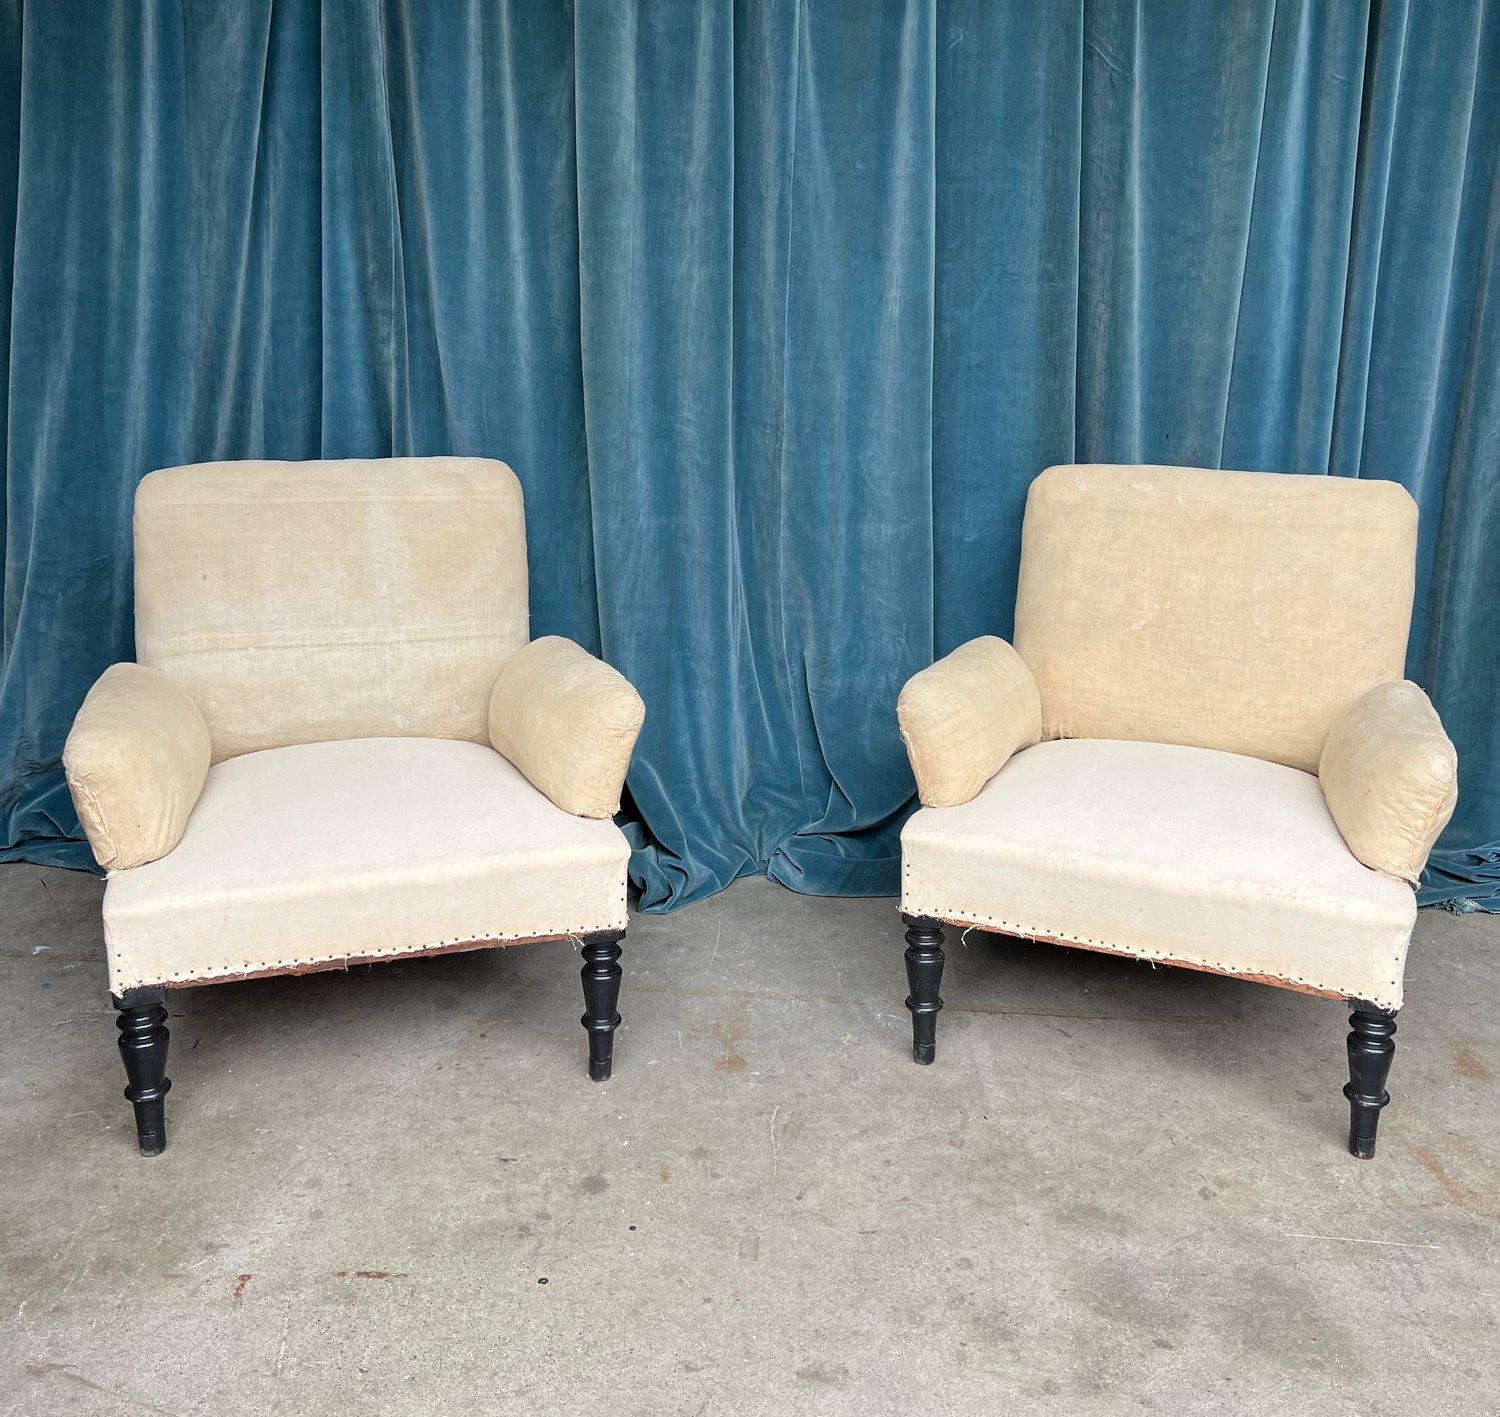 Une paire inhabituelle de fauteuils français Napoléon III de la fin du 19ème siècle. Les chaises sont dotées d'accoudoirs semi-détachés qui leur confèrent dimension et style. Elles conviennent à une grande variété d'environnements, du traditionnel